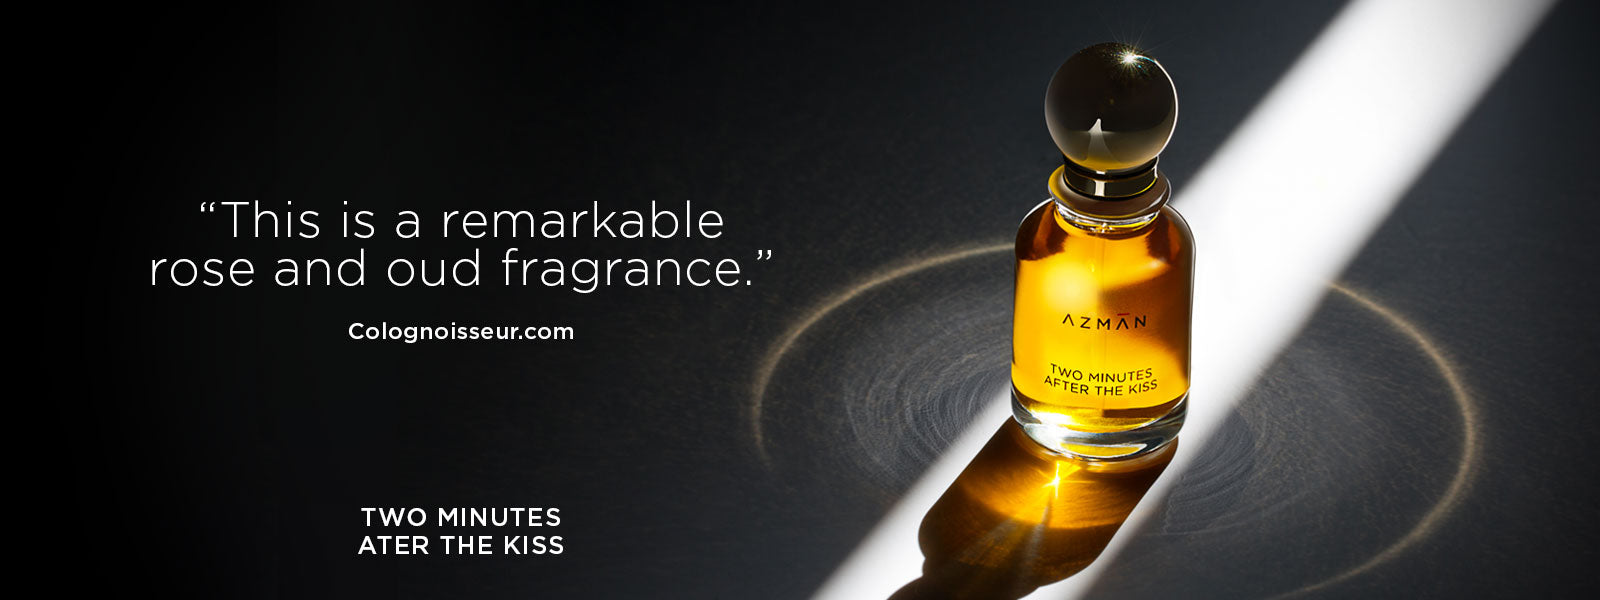 Branded Perfume - Louis Vuitton Pur Oud - Eau De Parfum